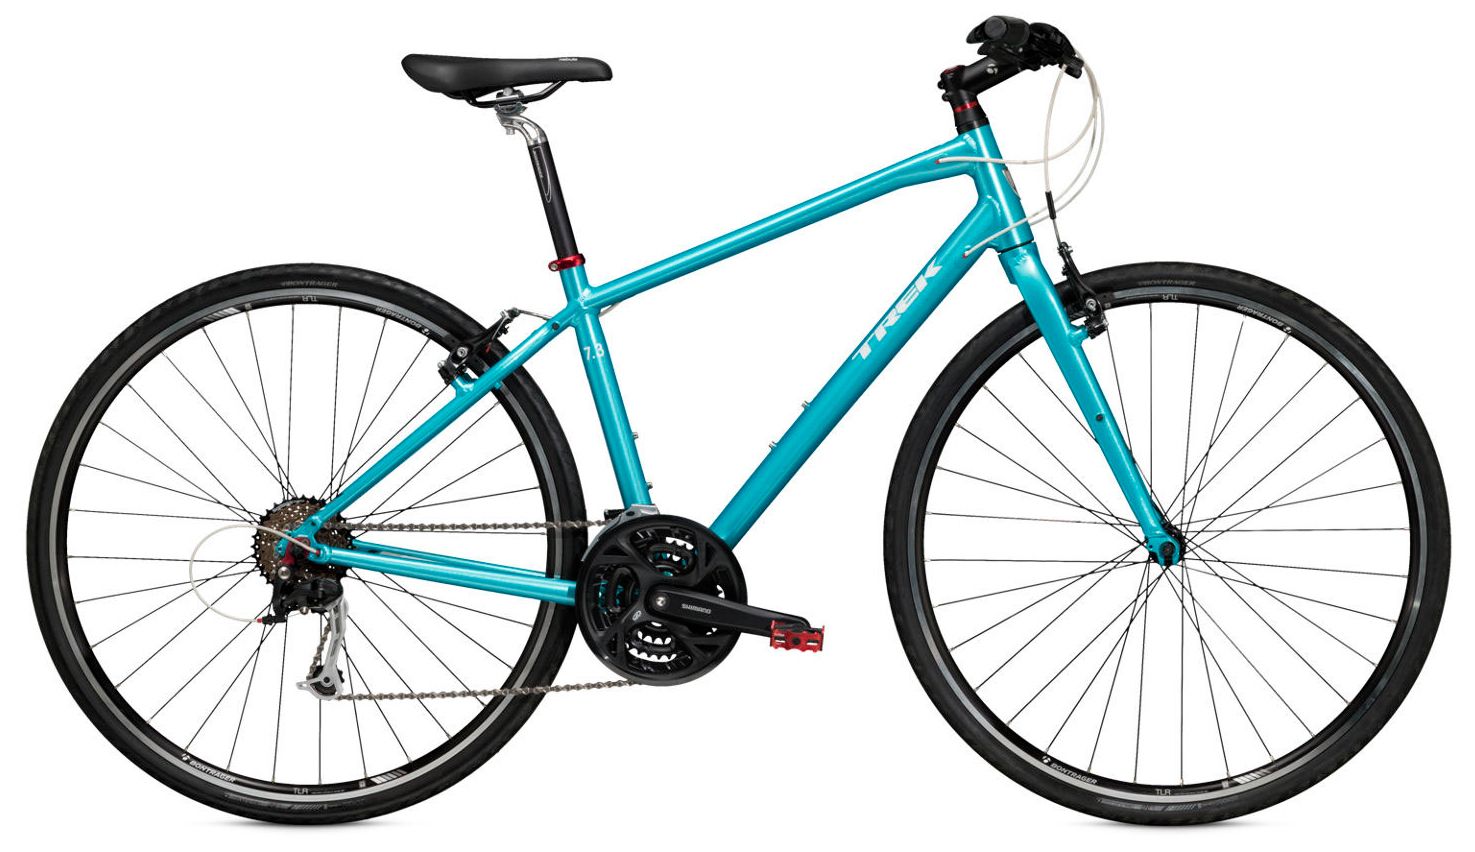  Велосипед Trek 7.3 FX WSD 2015